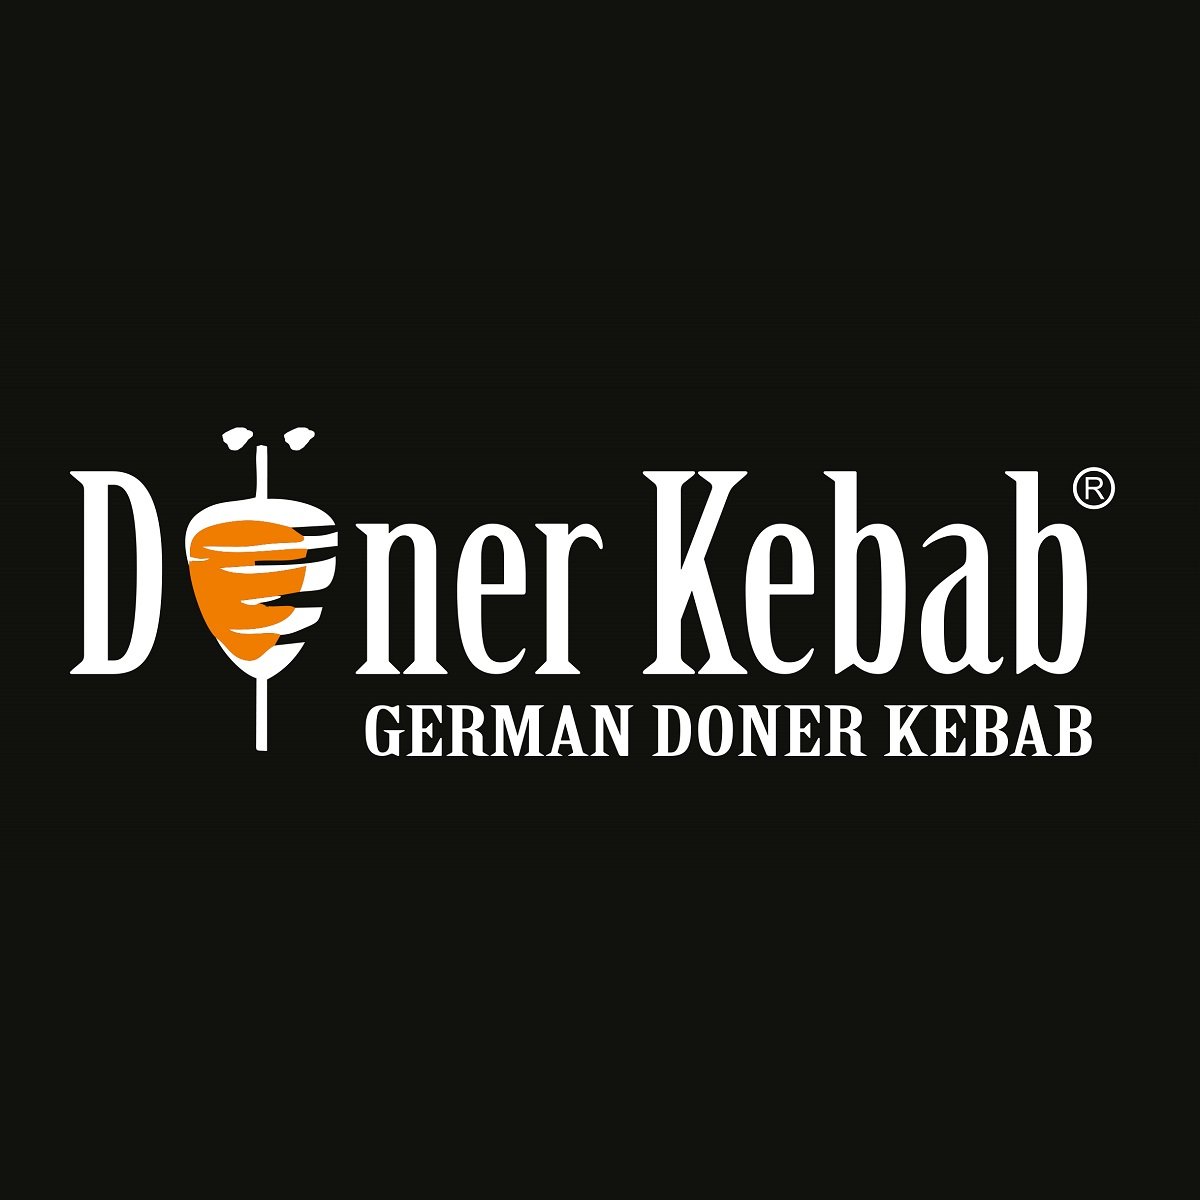 German-Doner-Kebab-Logo-Square.jpeg